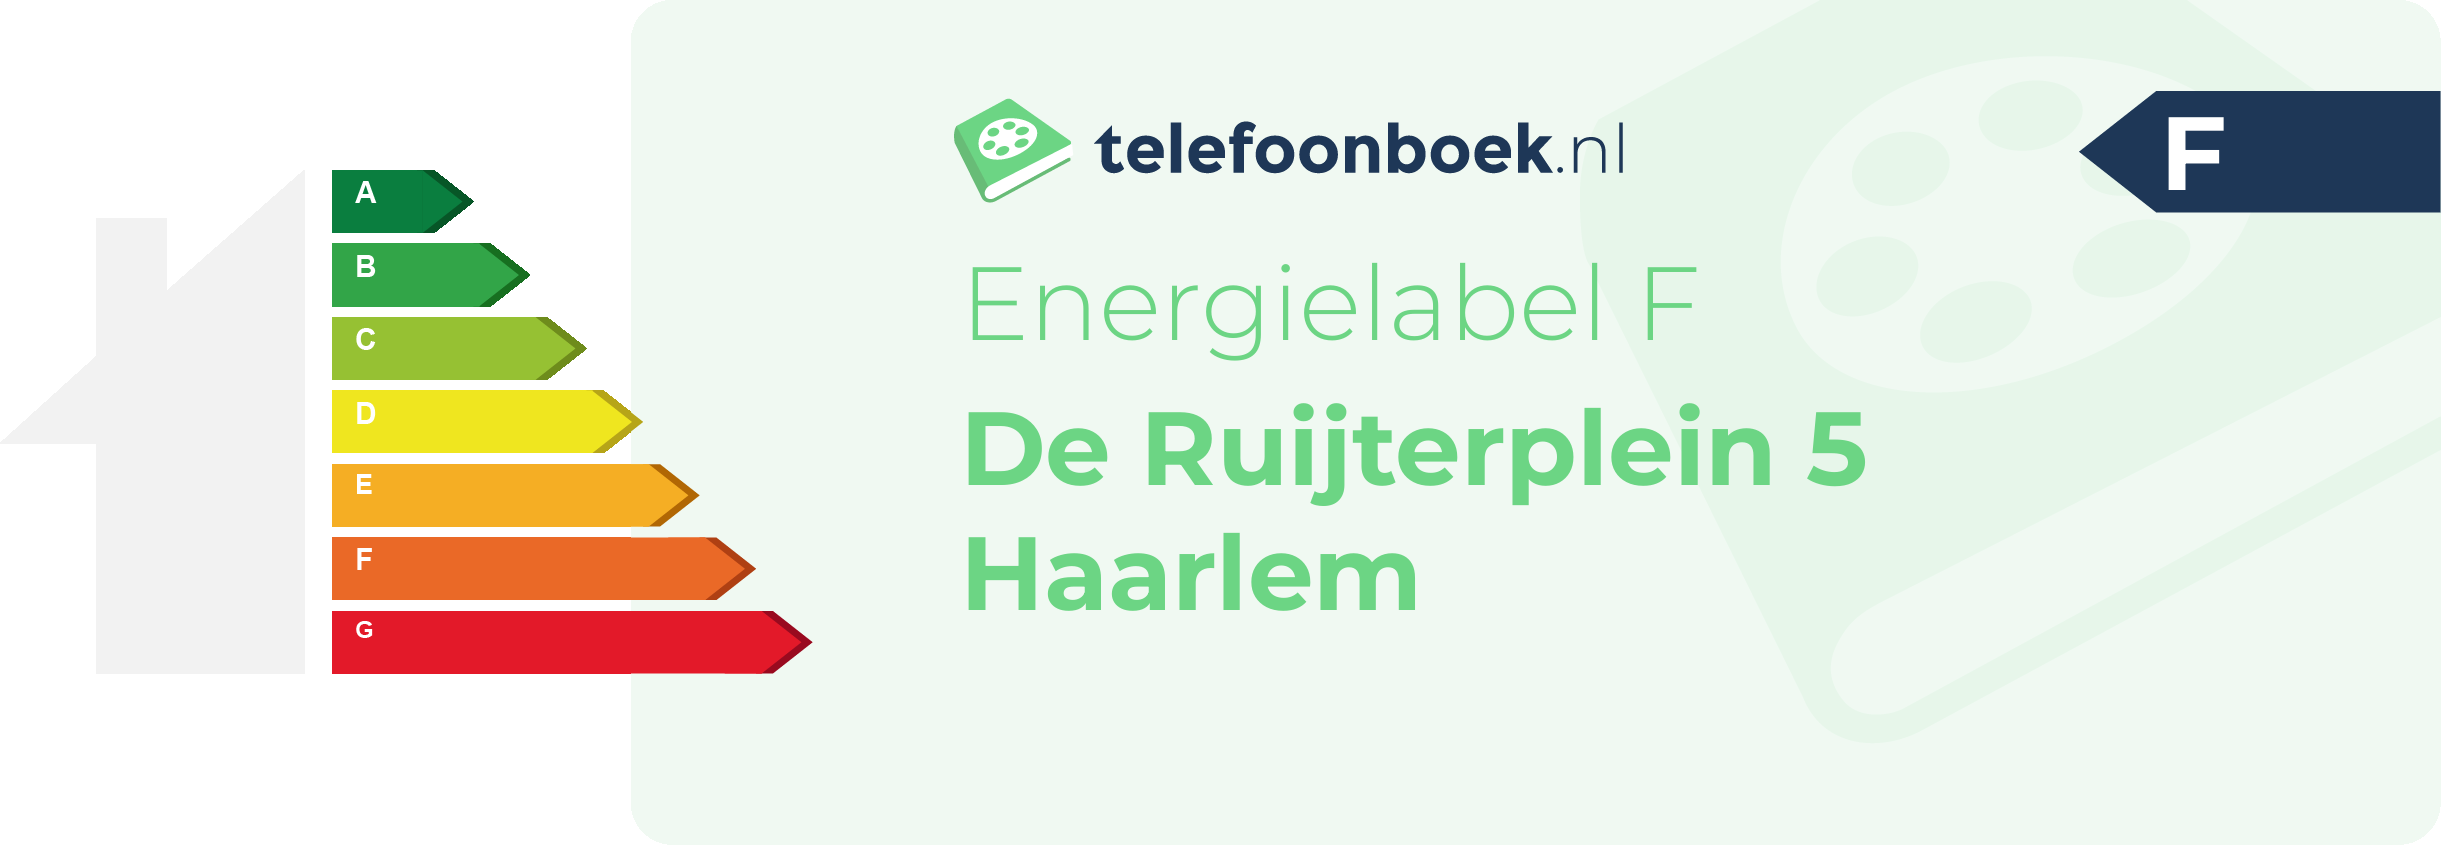 Energielabel De Ruijterplein 5 Haarlem